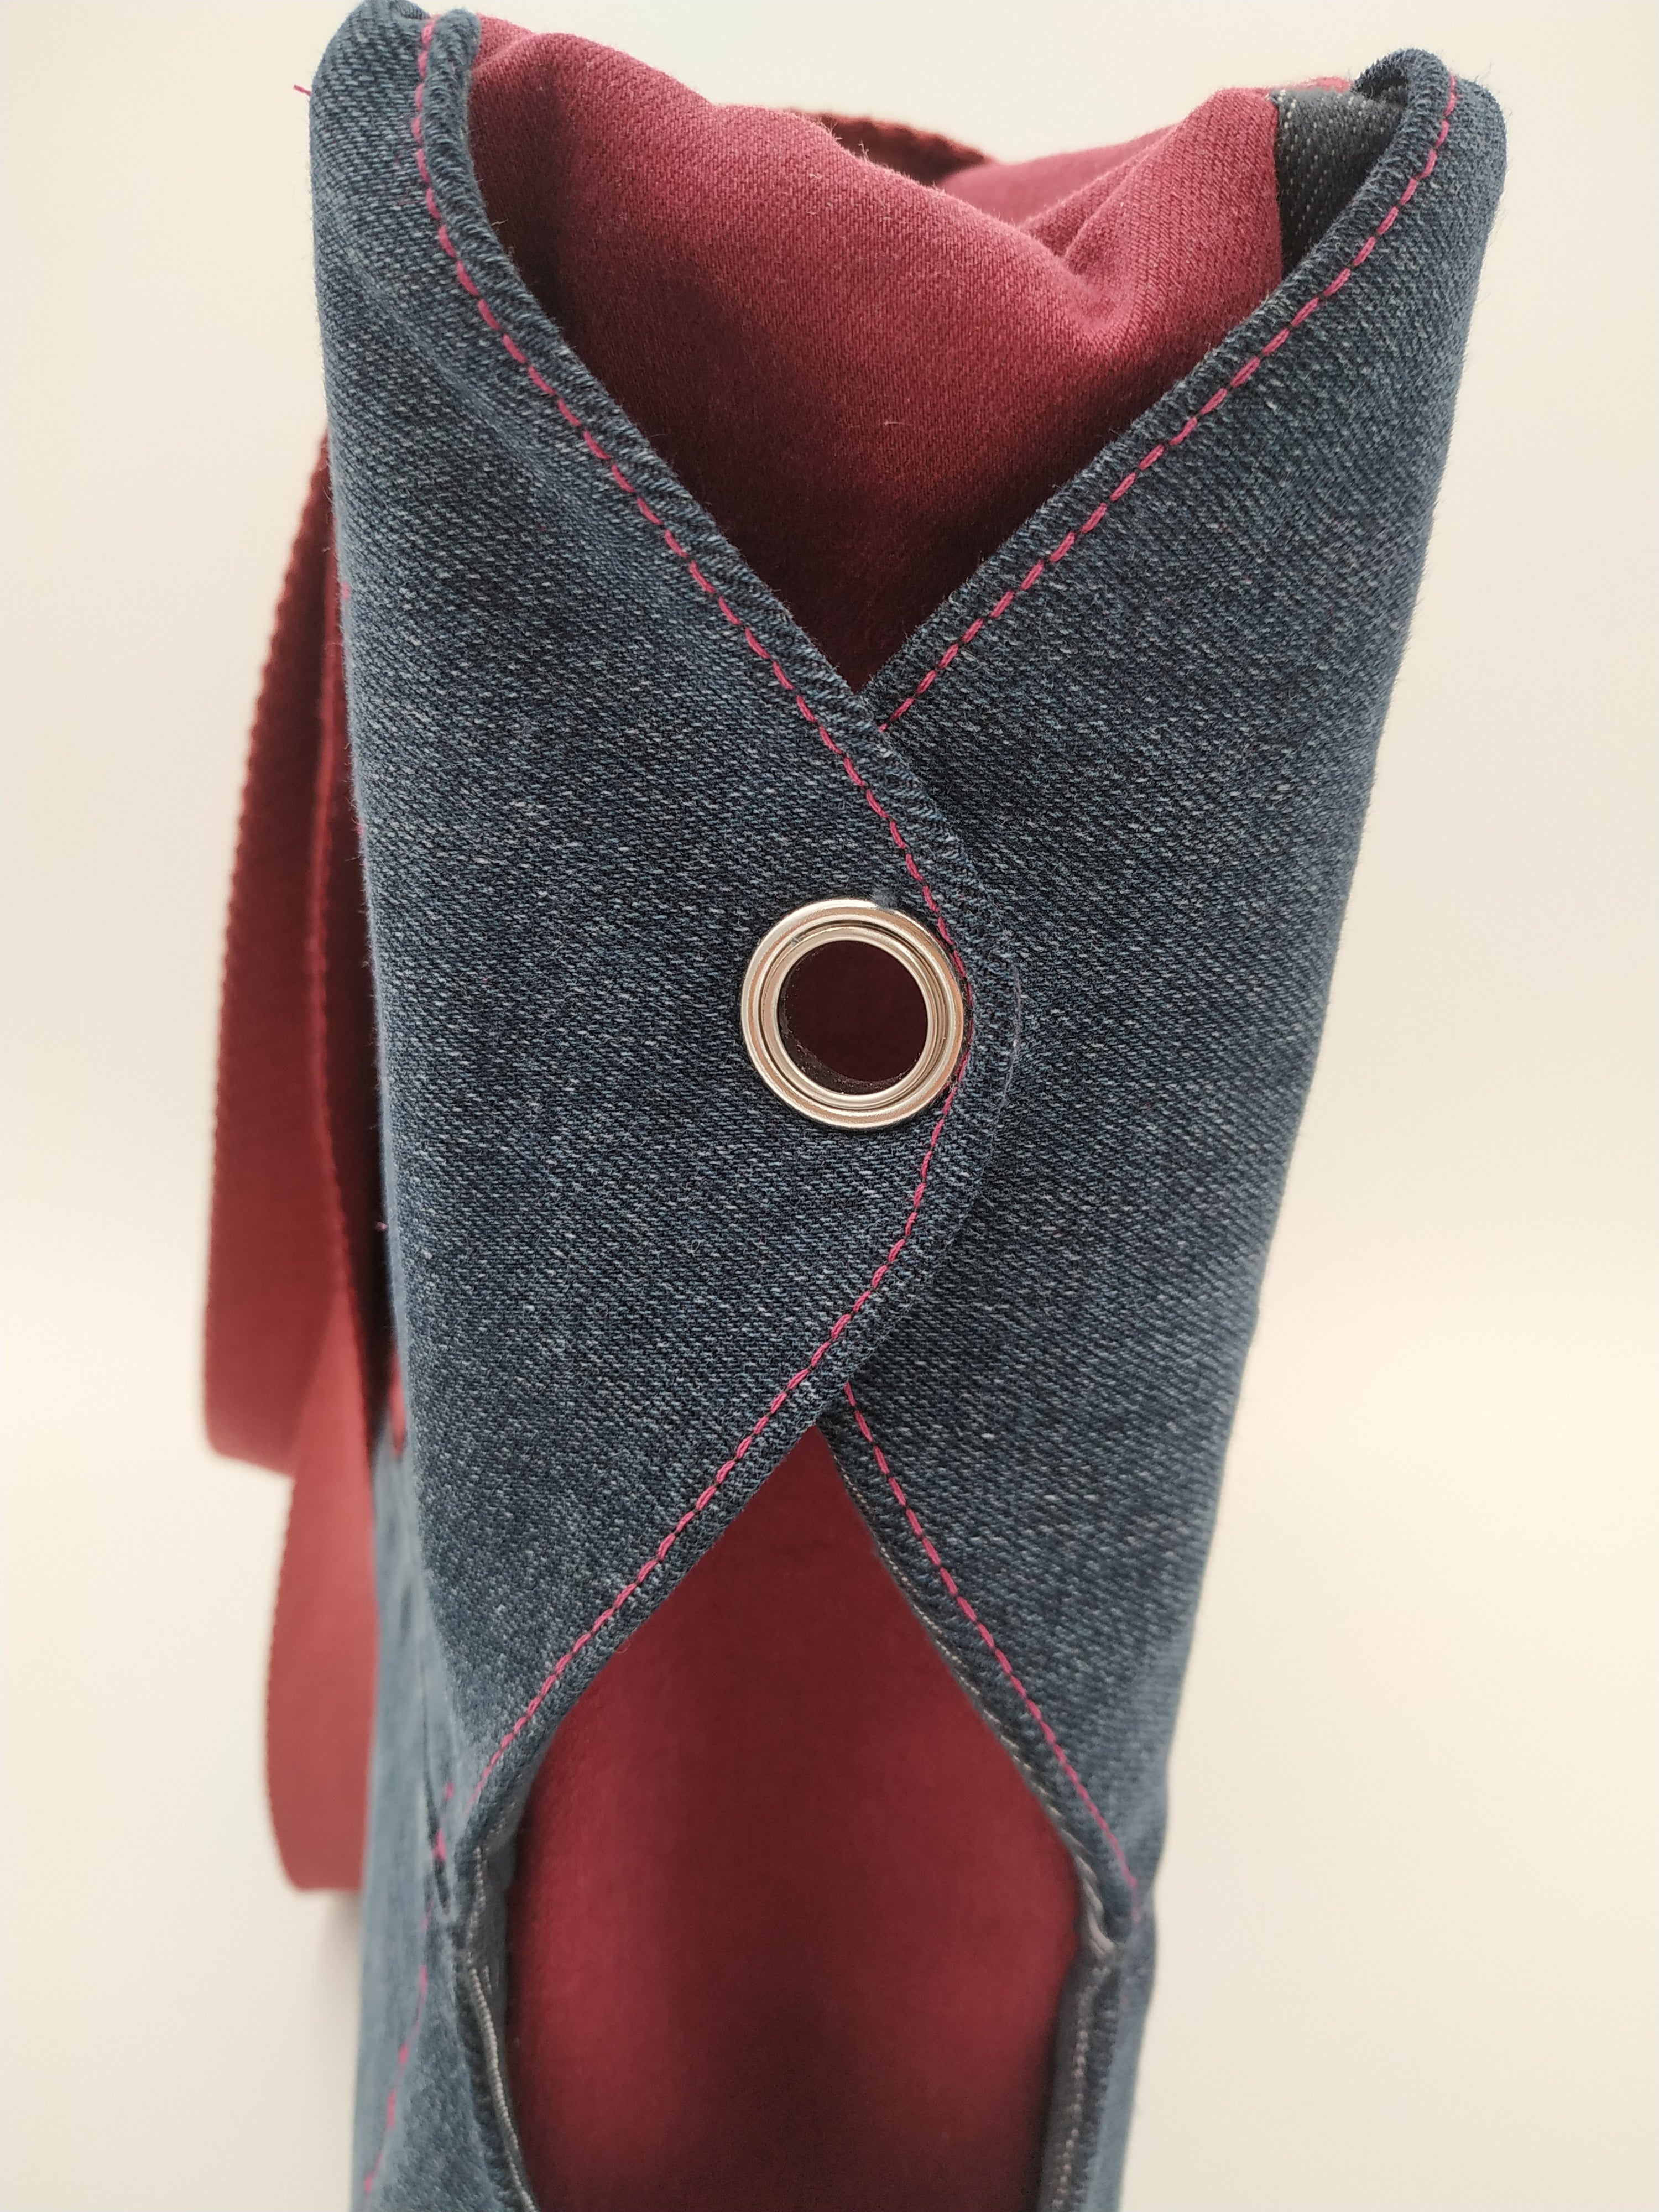 Sac bicolore grand modèle - détail côté : 2 ailettes en jean sombre attachées par un oeillet sur fond de jean rouge